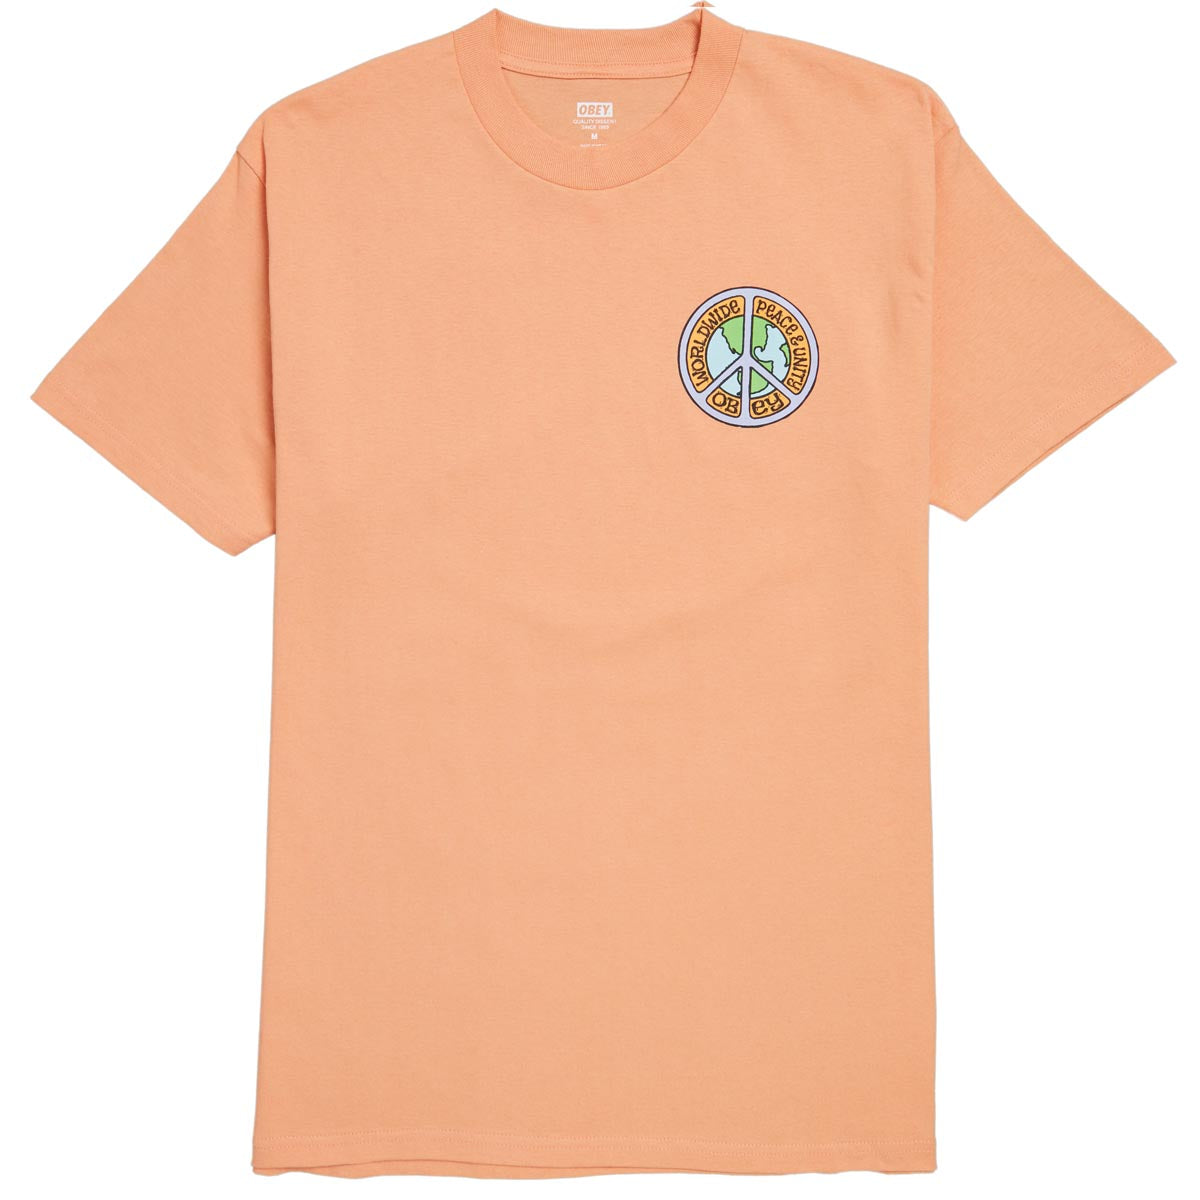 Obey Peace & Unit T-Shirt - Citrus image 2